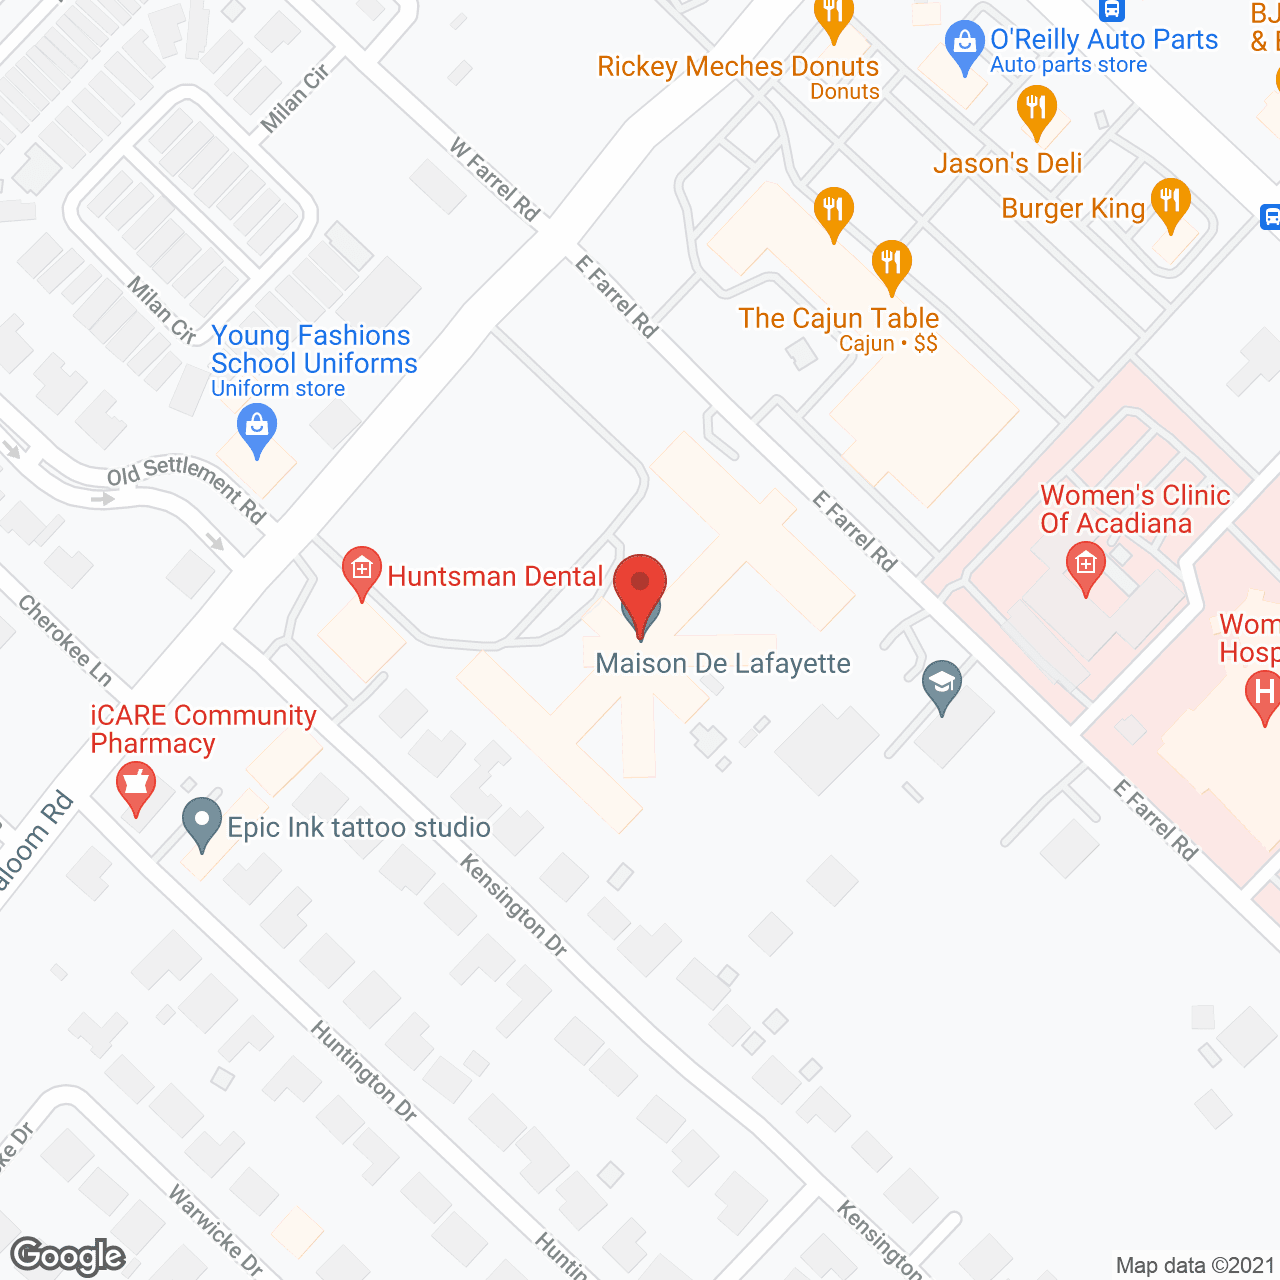 Maison De Lafayette in google map